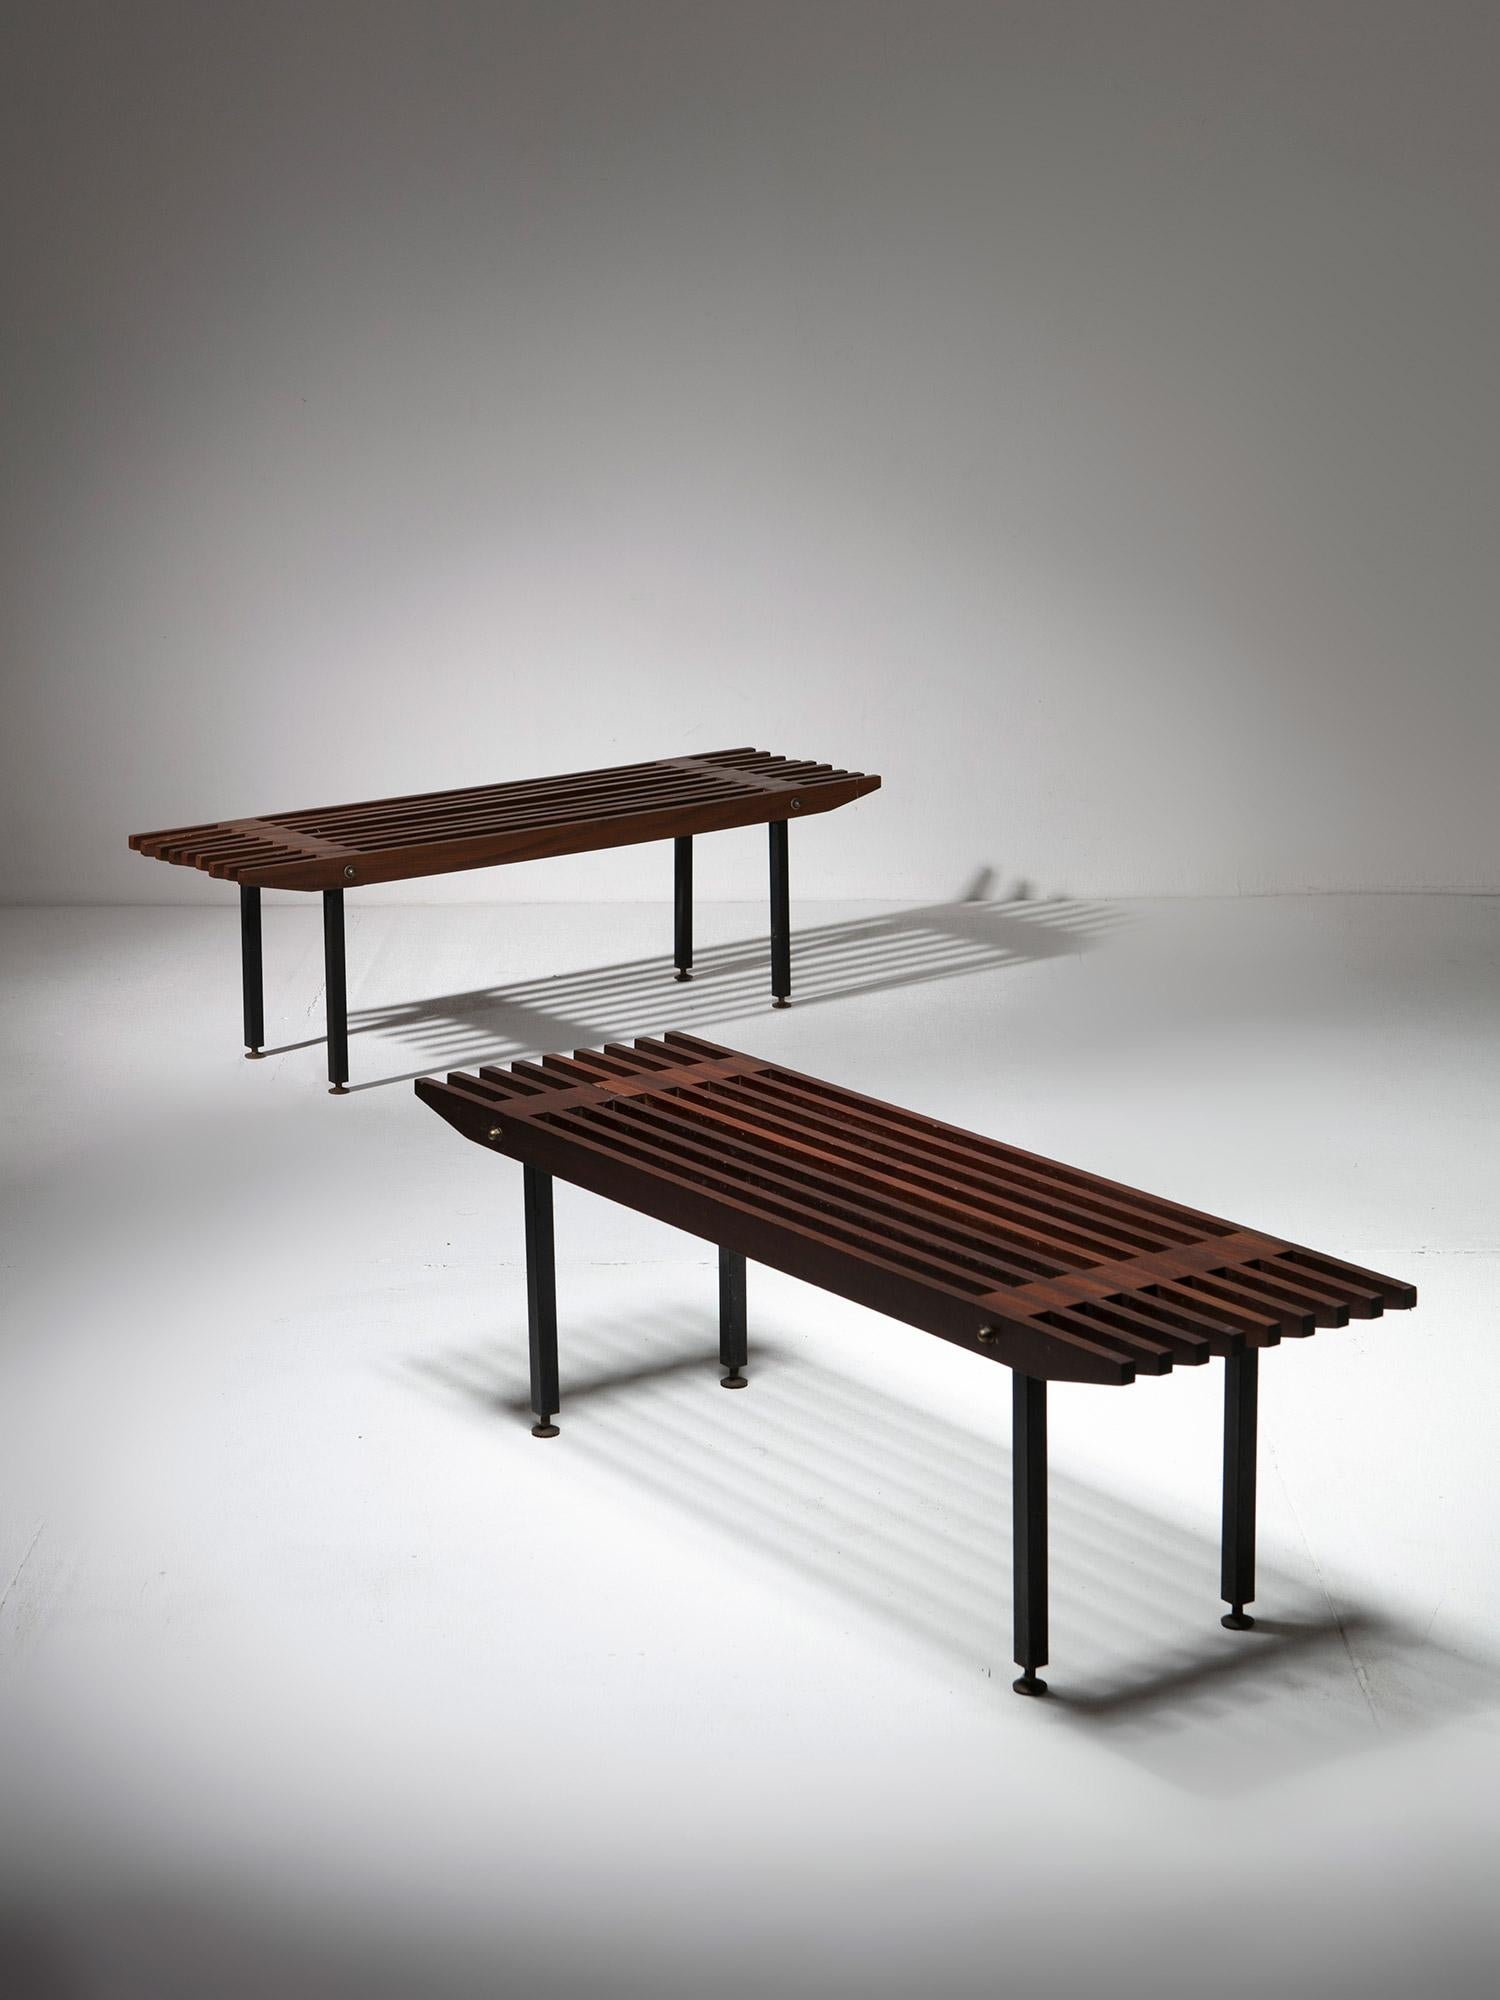 Zwei Holzbänke, die Carlo De Carli für Fiarm zugeschrieben werden.
Massivholzplatten mit abgeschrägten Kanten, getragen von einem Metallrahmen mit Messingverbindungen.